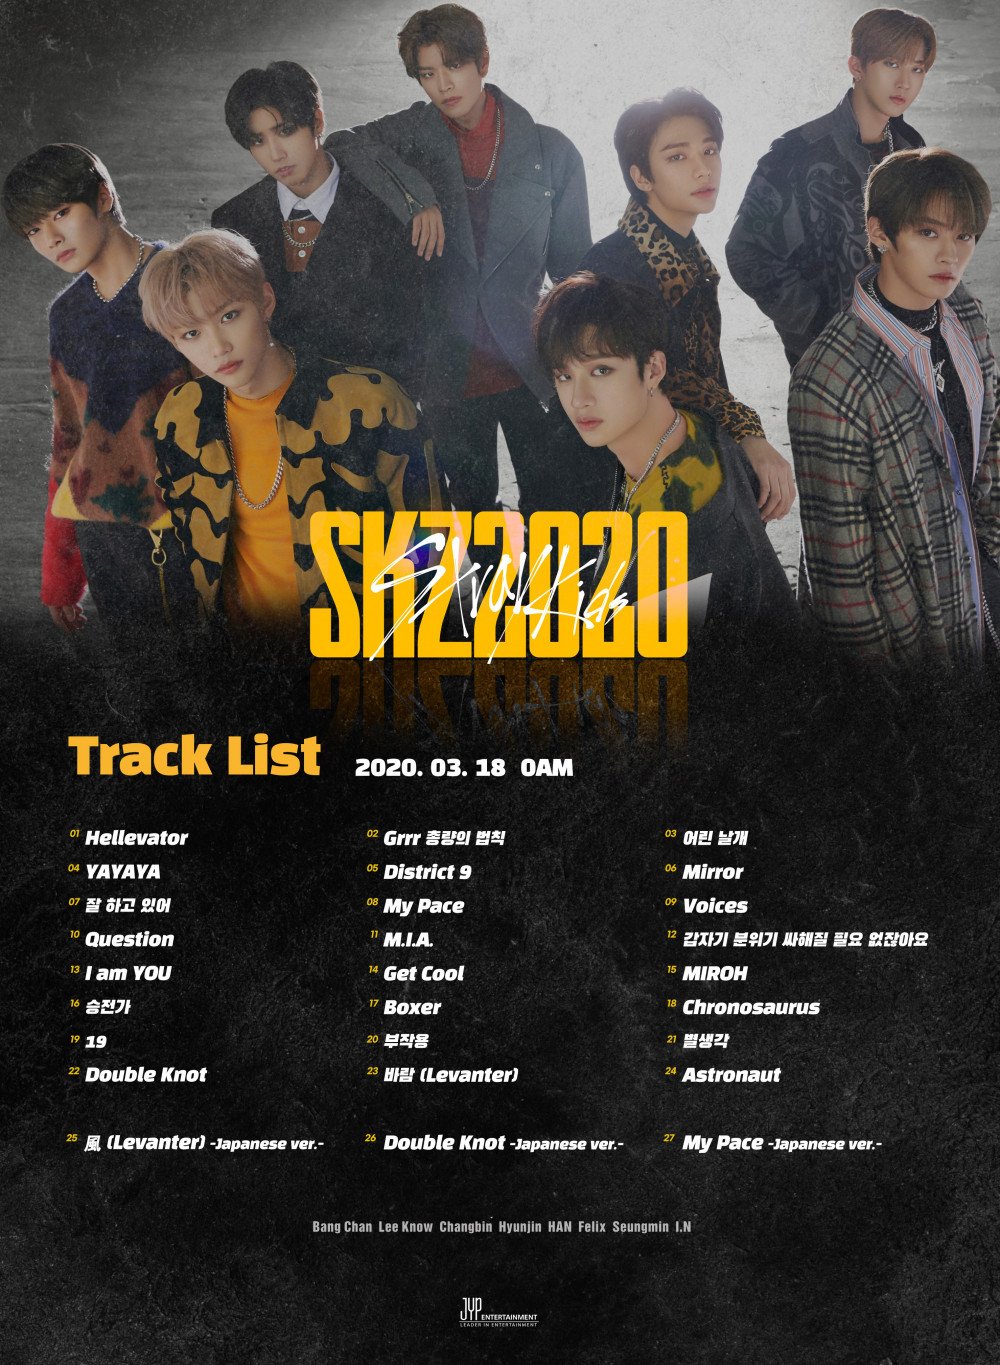 Stray Kids to release their first 'Best' album 'SKZ2020